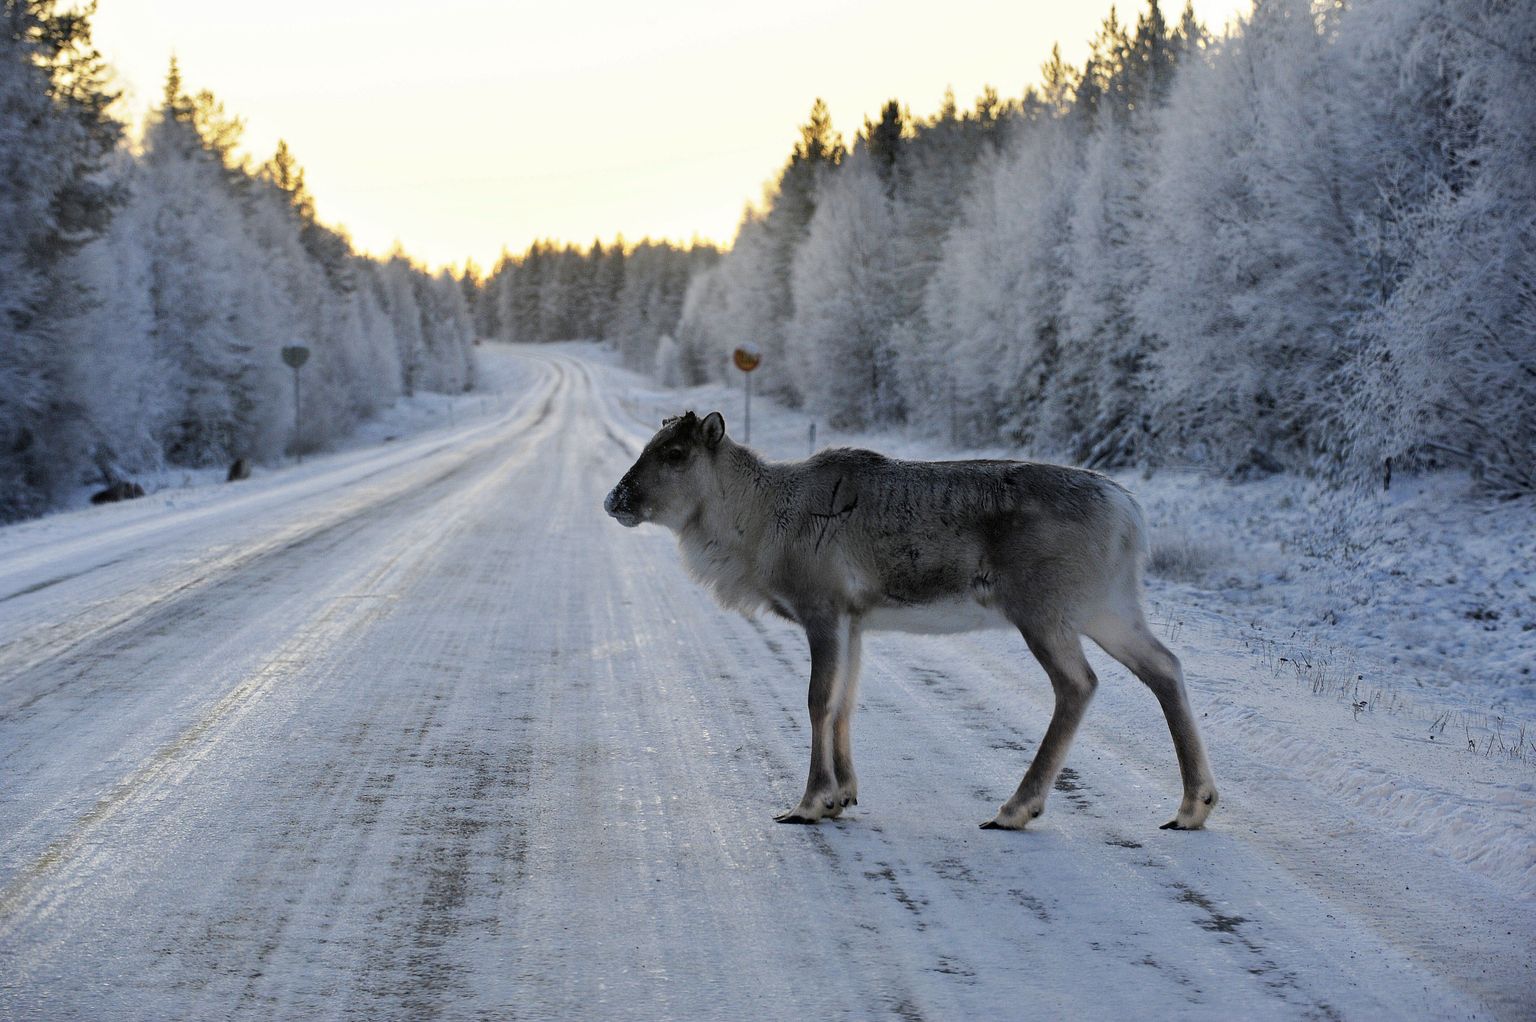 Soome metspõhjapõdrad on suhteliselt haruldased. Enamasti on võimalik kohata poolkodustatud karjades liikuvaid põhjapõtru.